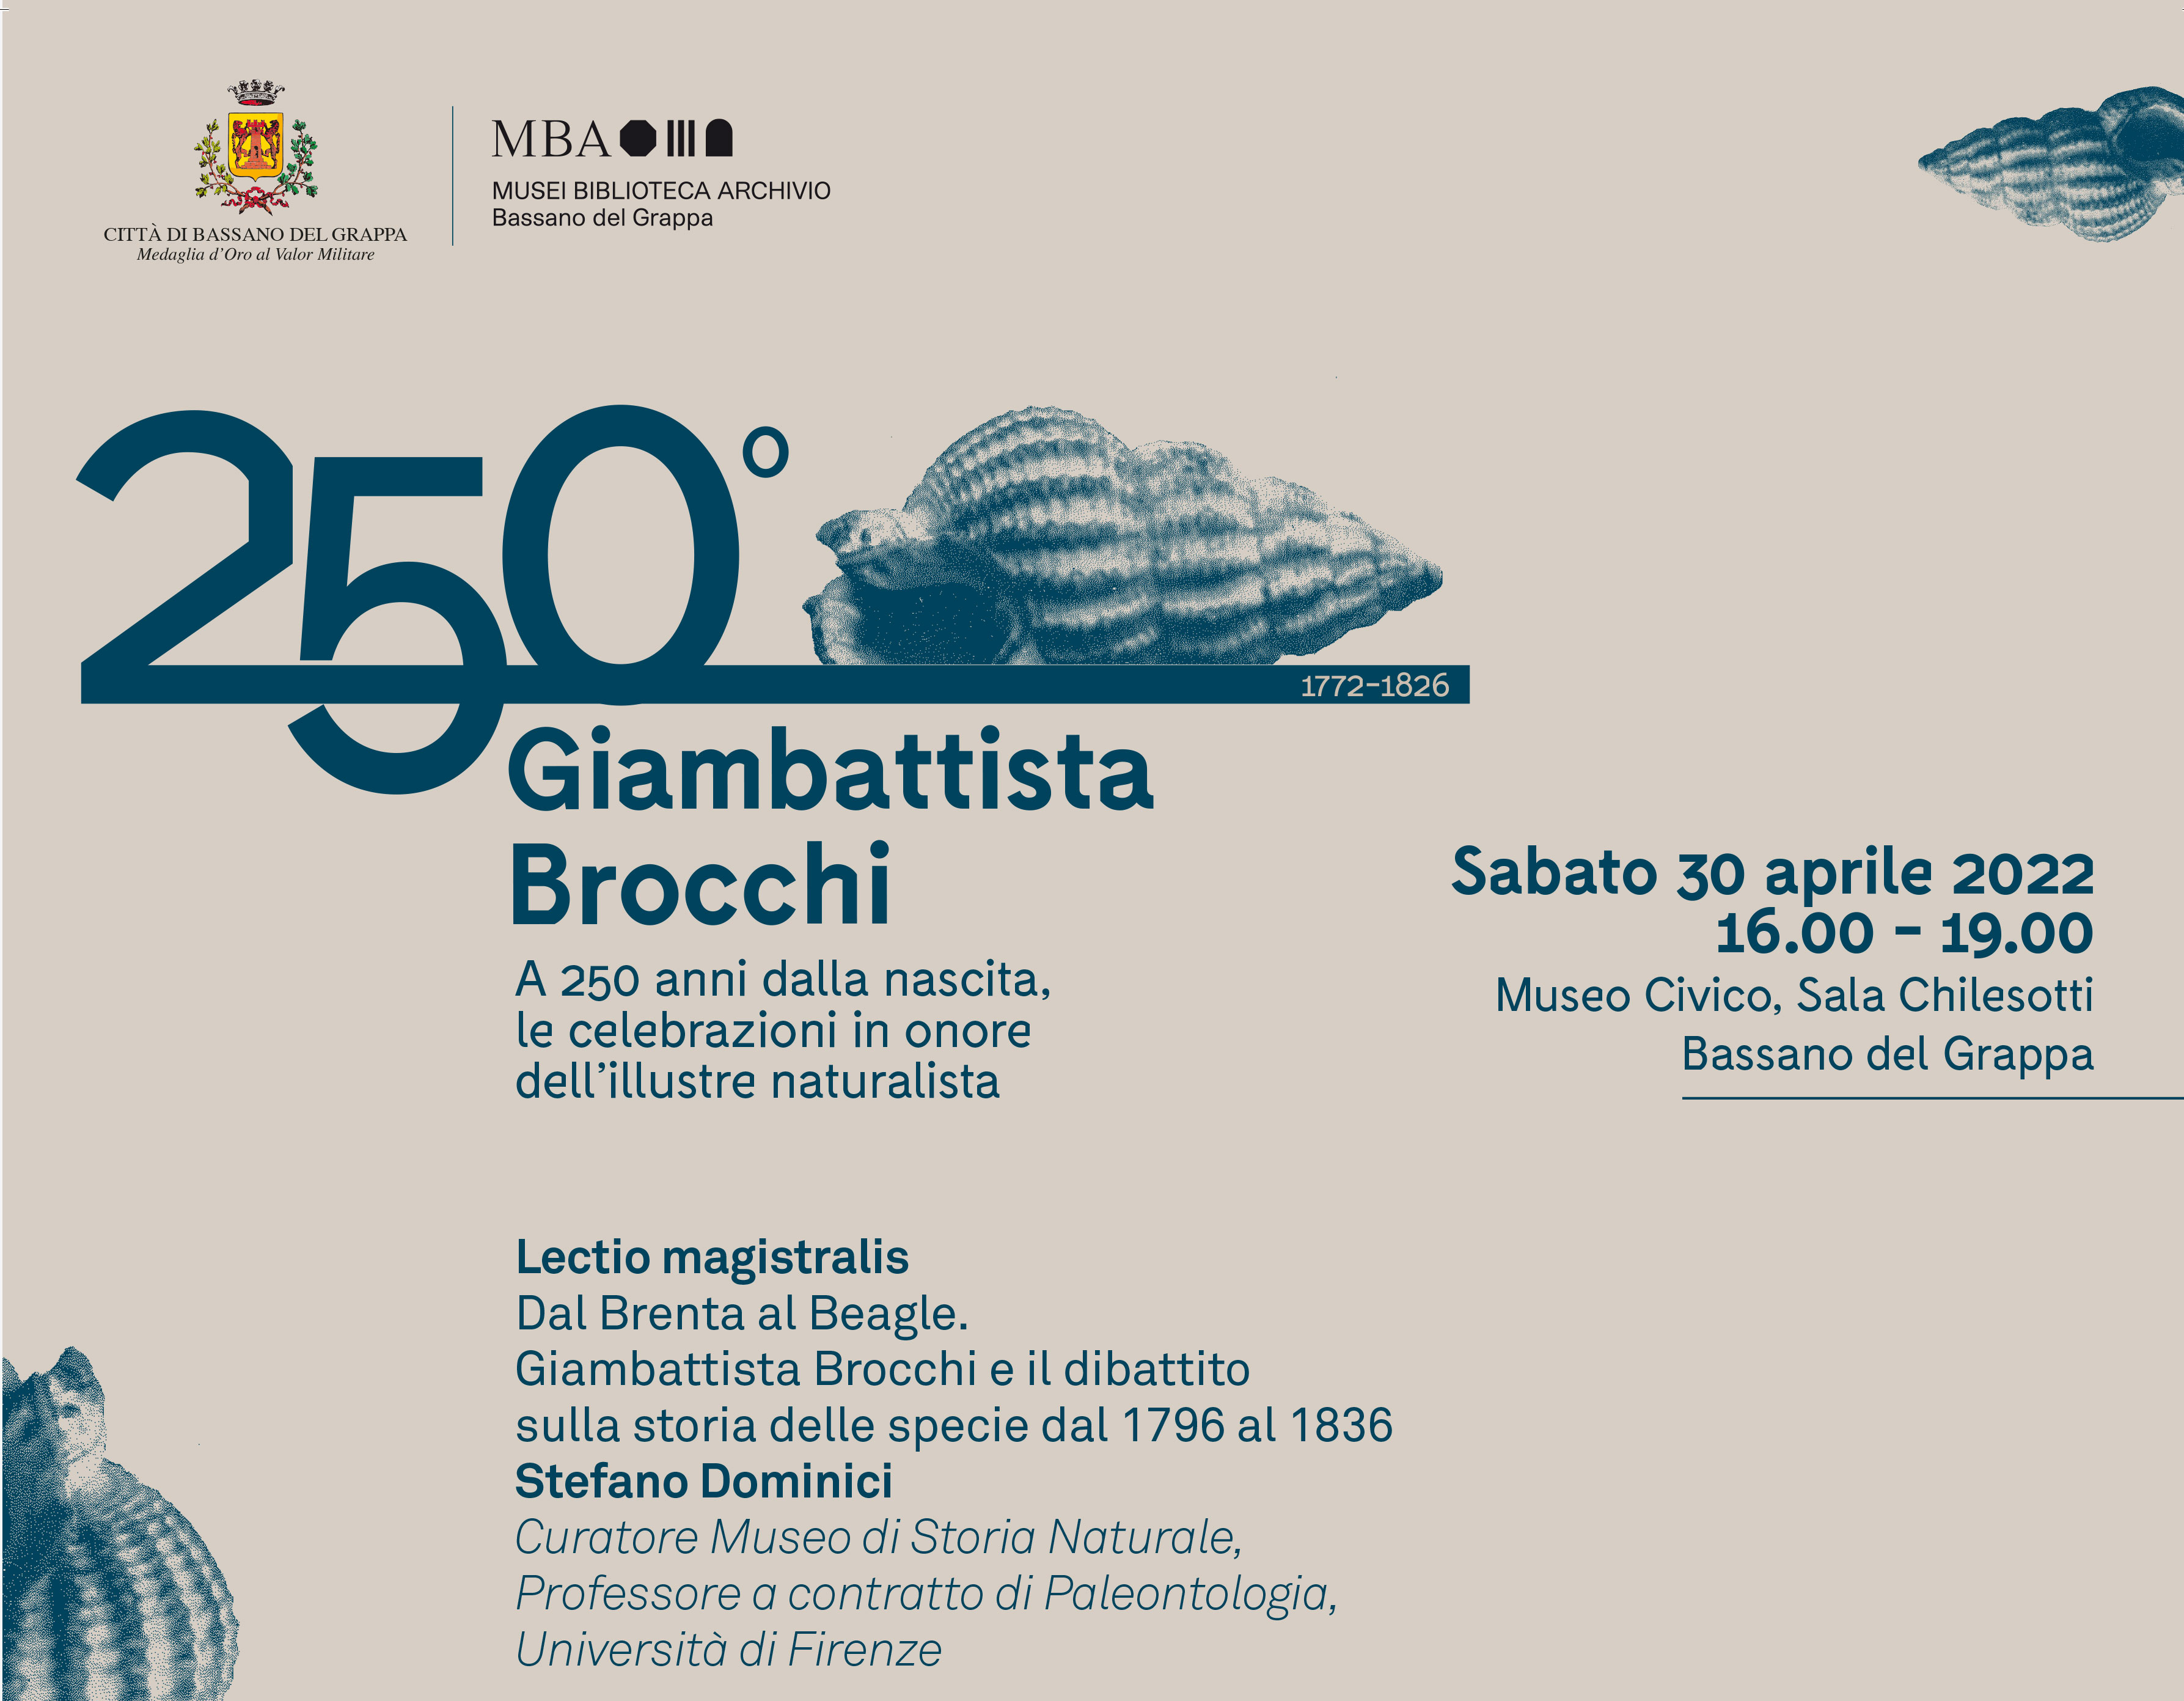 GIAMBATTISTA BROCCHI CONVEGNO per il 250° anniversario della nascita, Museo Civico,Bassano del Grappa, sabato 30 aprile